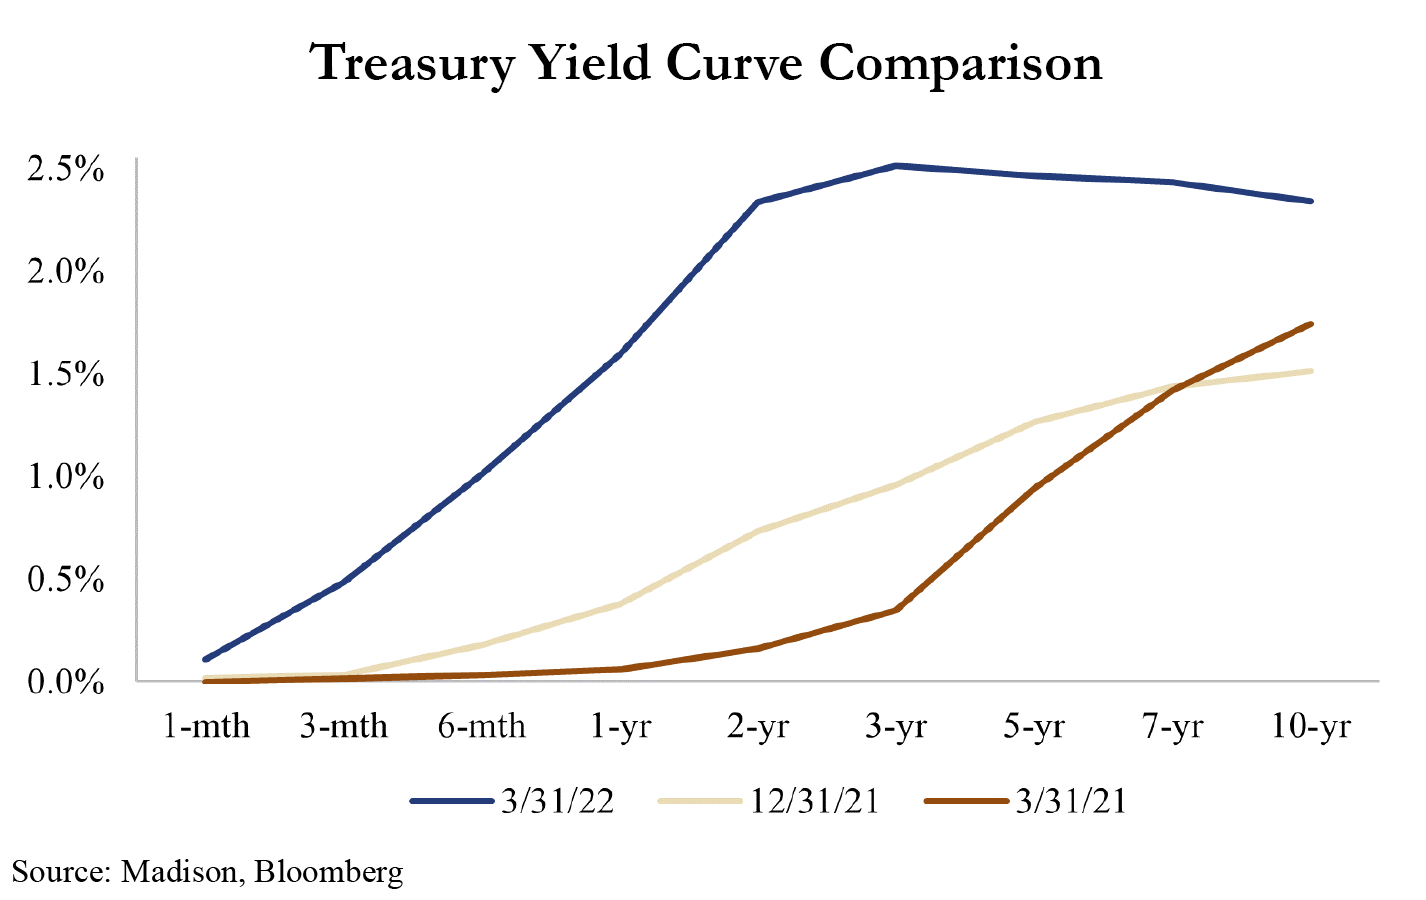 Treasury yield curve comparison